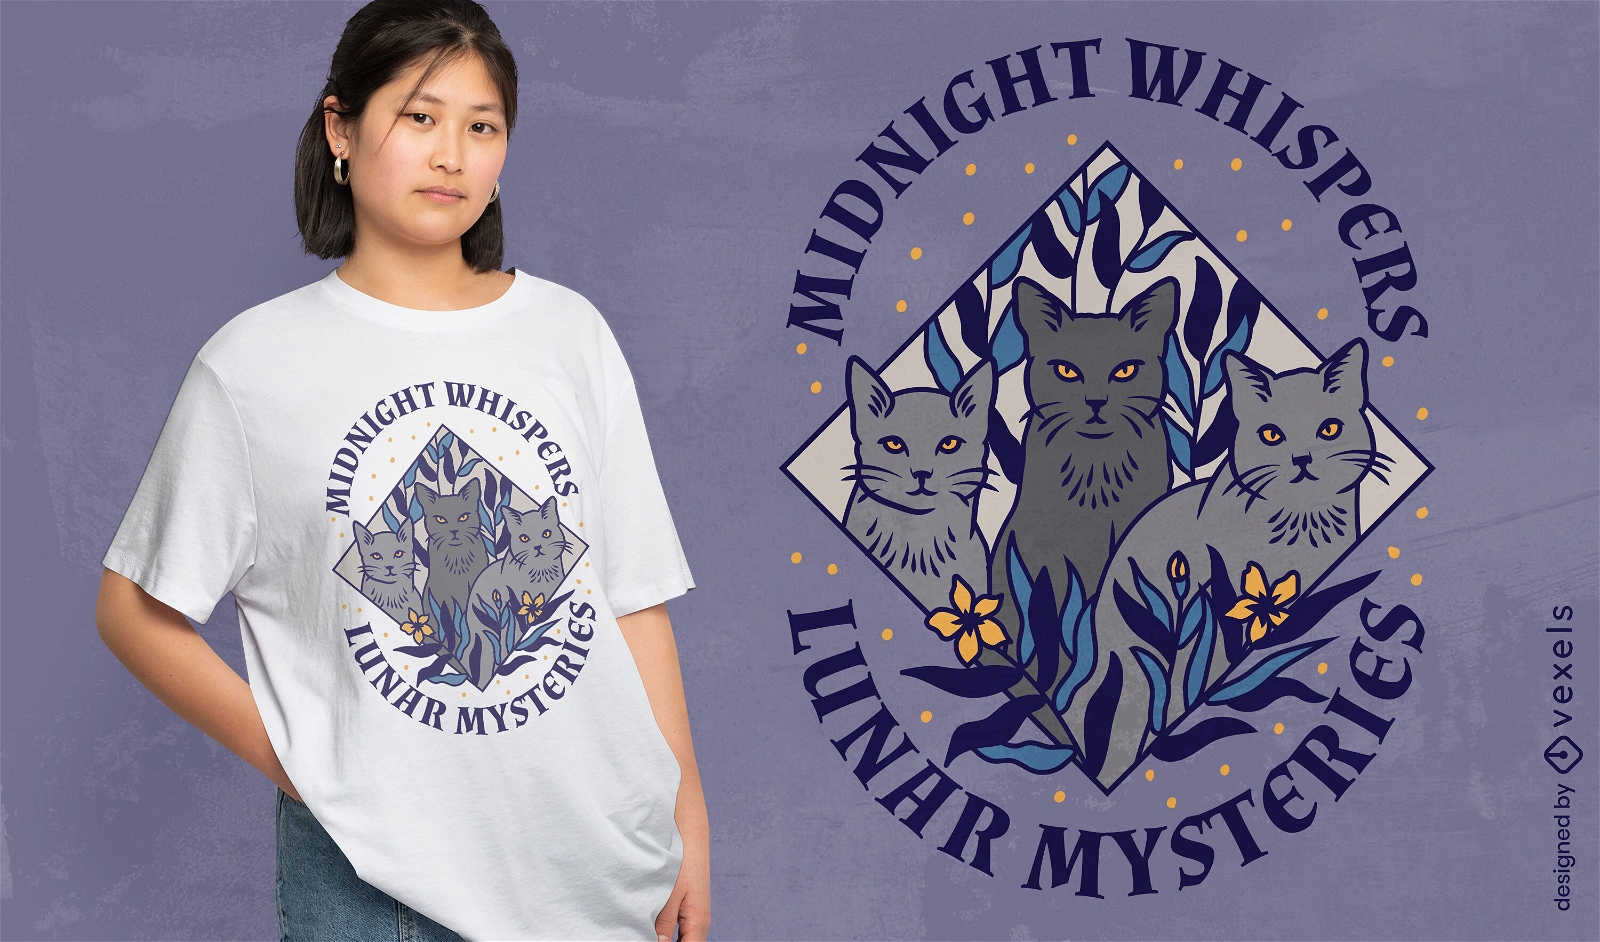 Lunar cat mysteries t-shirt design